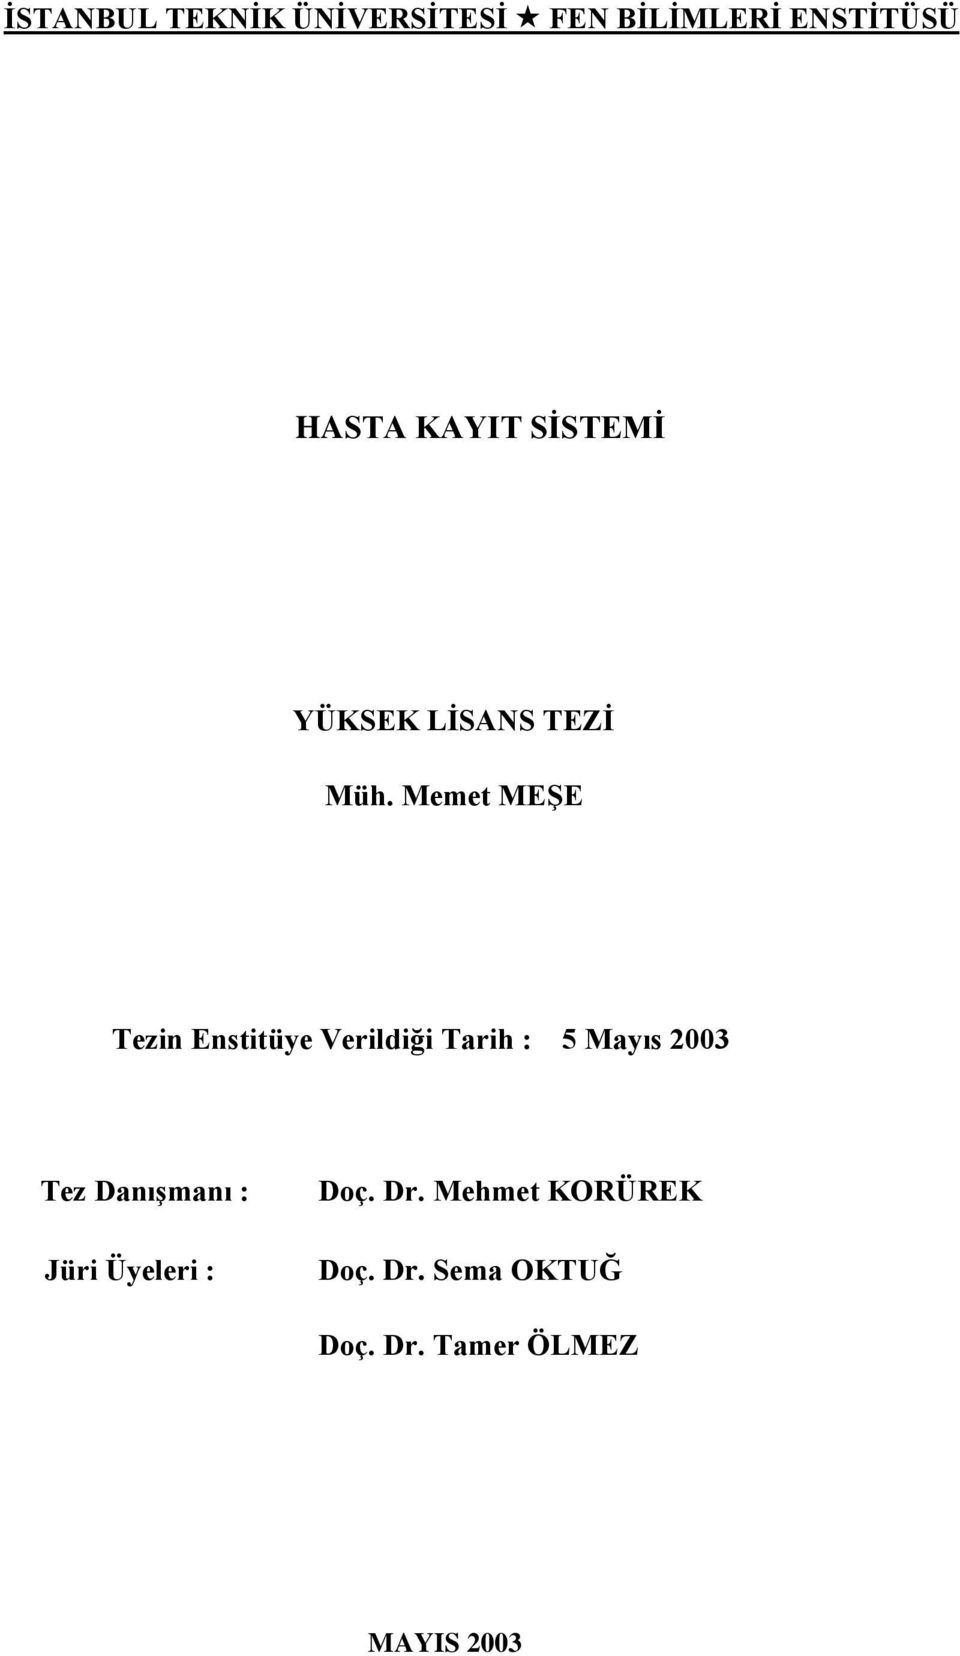 Memet MEġE (504991426) Tezin Enstitüye Verildiği Tarih : 5 Mayıs 2003 Tezin